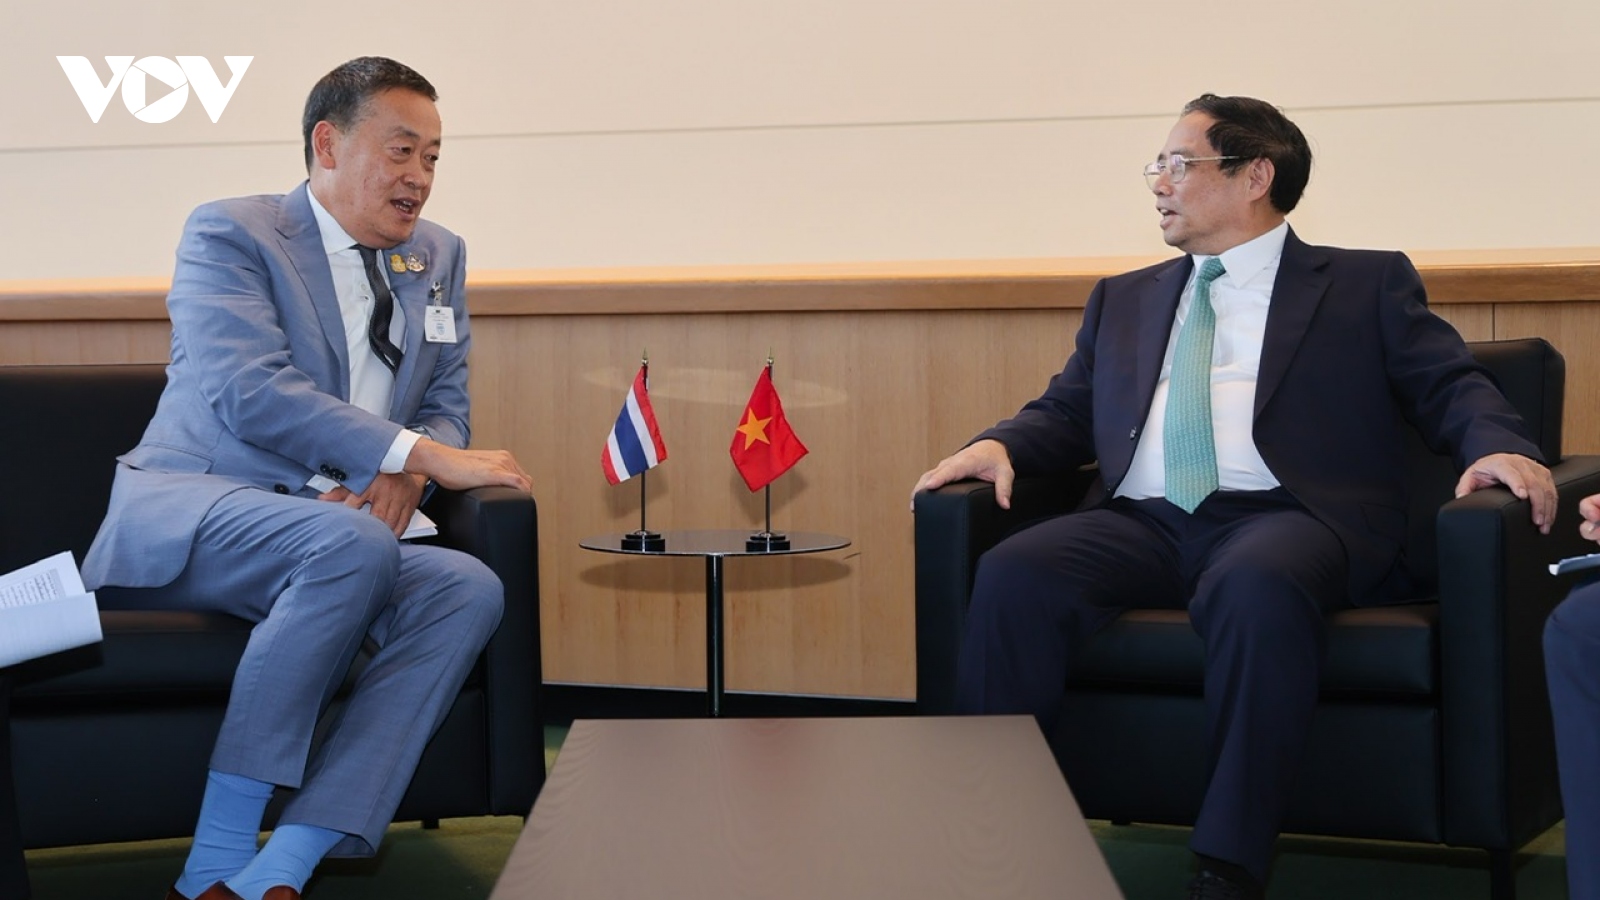 Thủ tướng nhấn mạnh 4 trọng tâm cần thúc đẩy giữa Việt Nam và Thái Lan